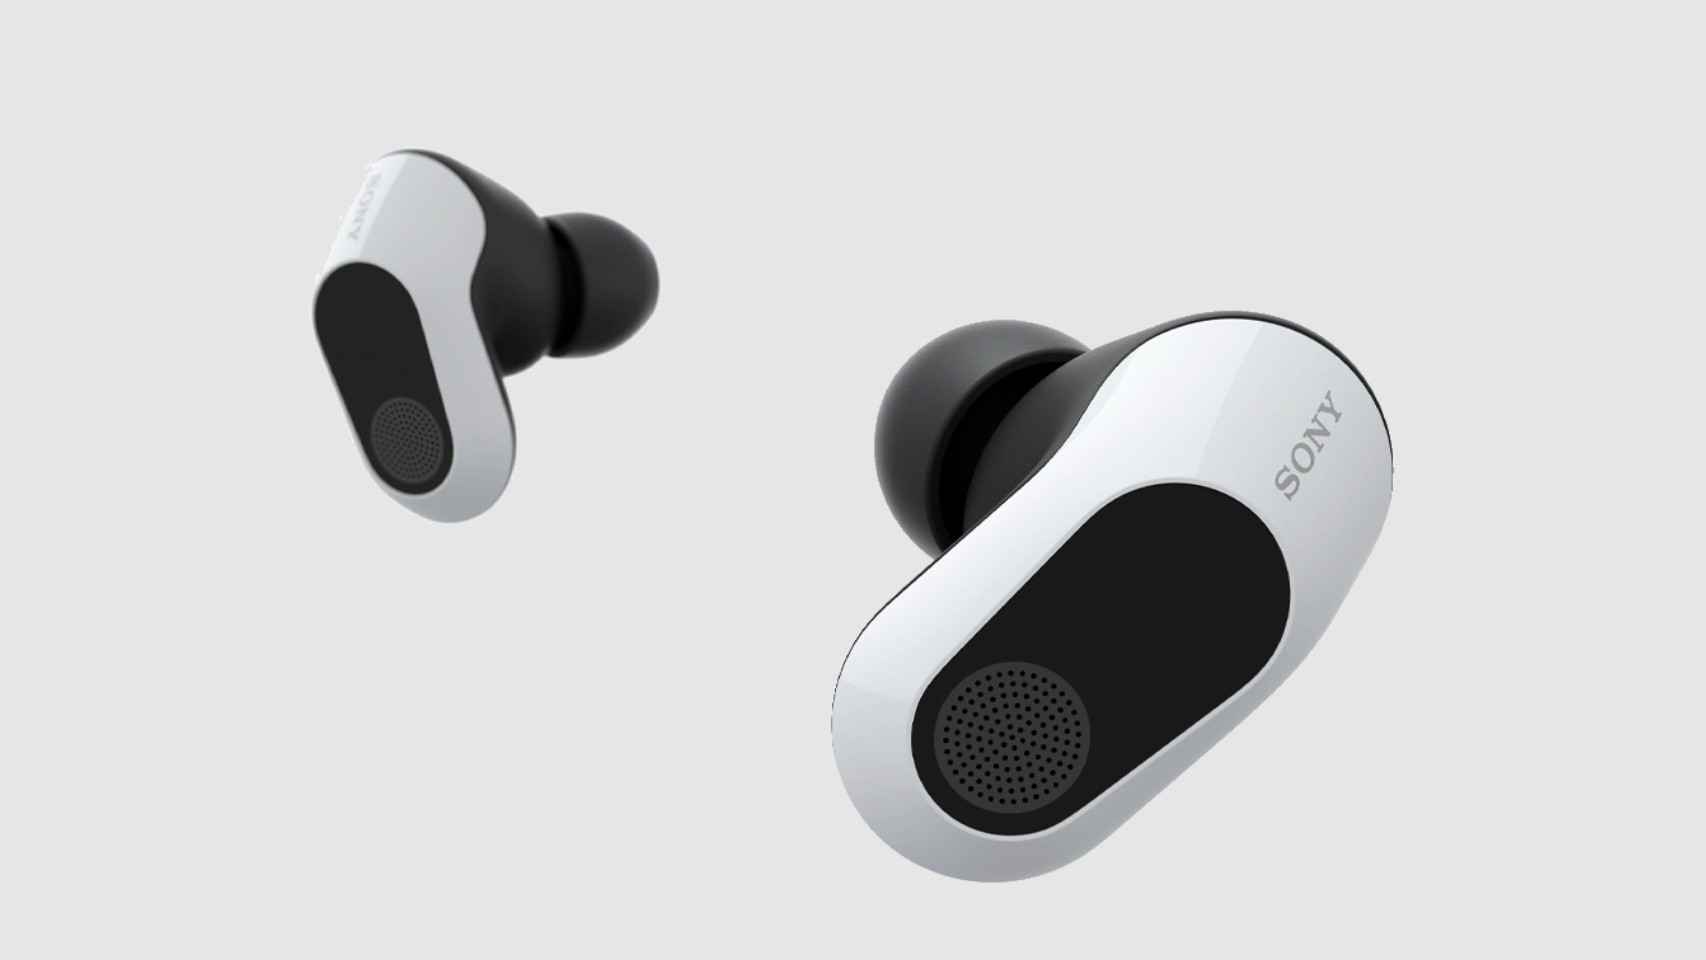 Los nuevos auriculares inalámbricos de la “Play 5 tendrán tecnología  inmersiva - El Cronista